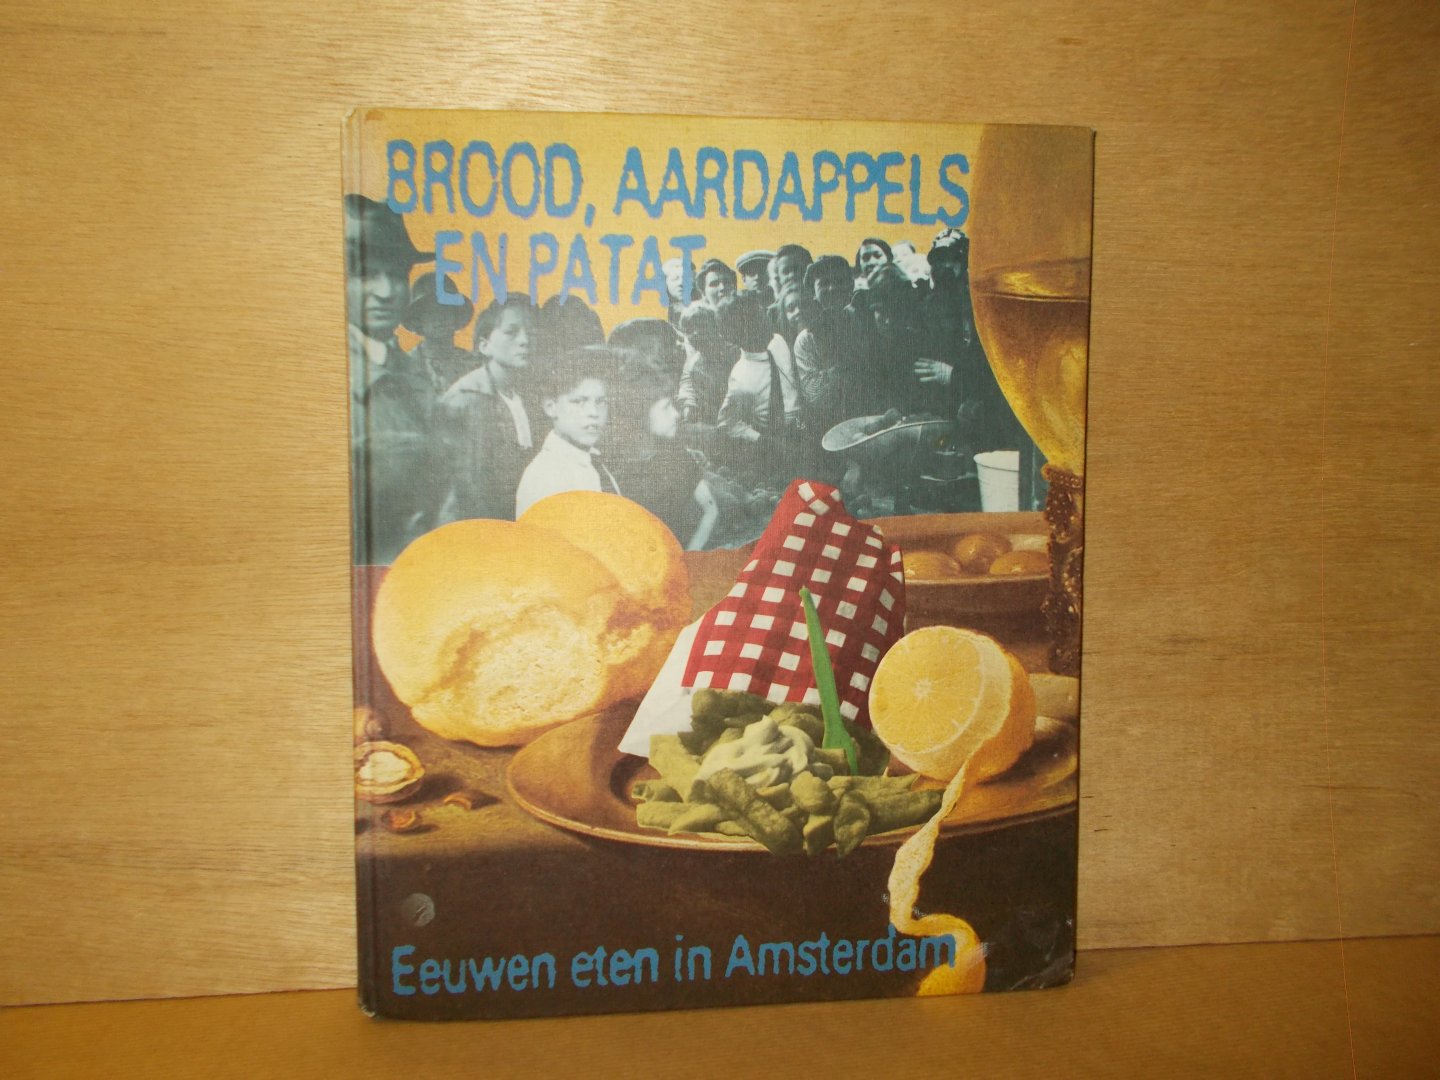 Kistemaker, R. / Lakerveld, C. van (redactie) - Brood, aardappels en patat eeuwen eten in Amsterdam